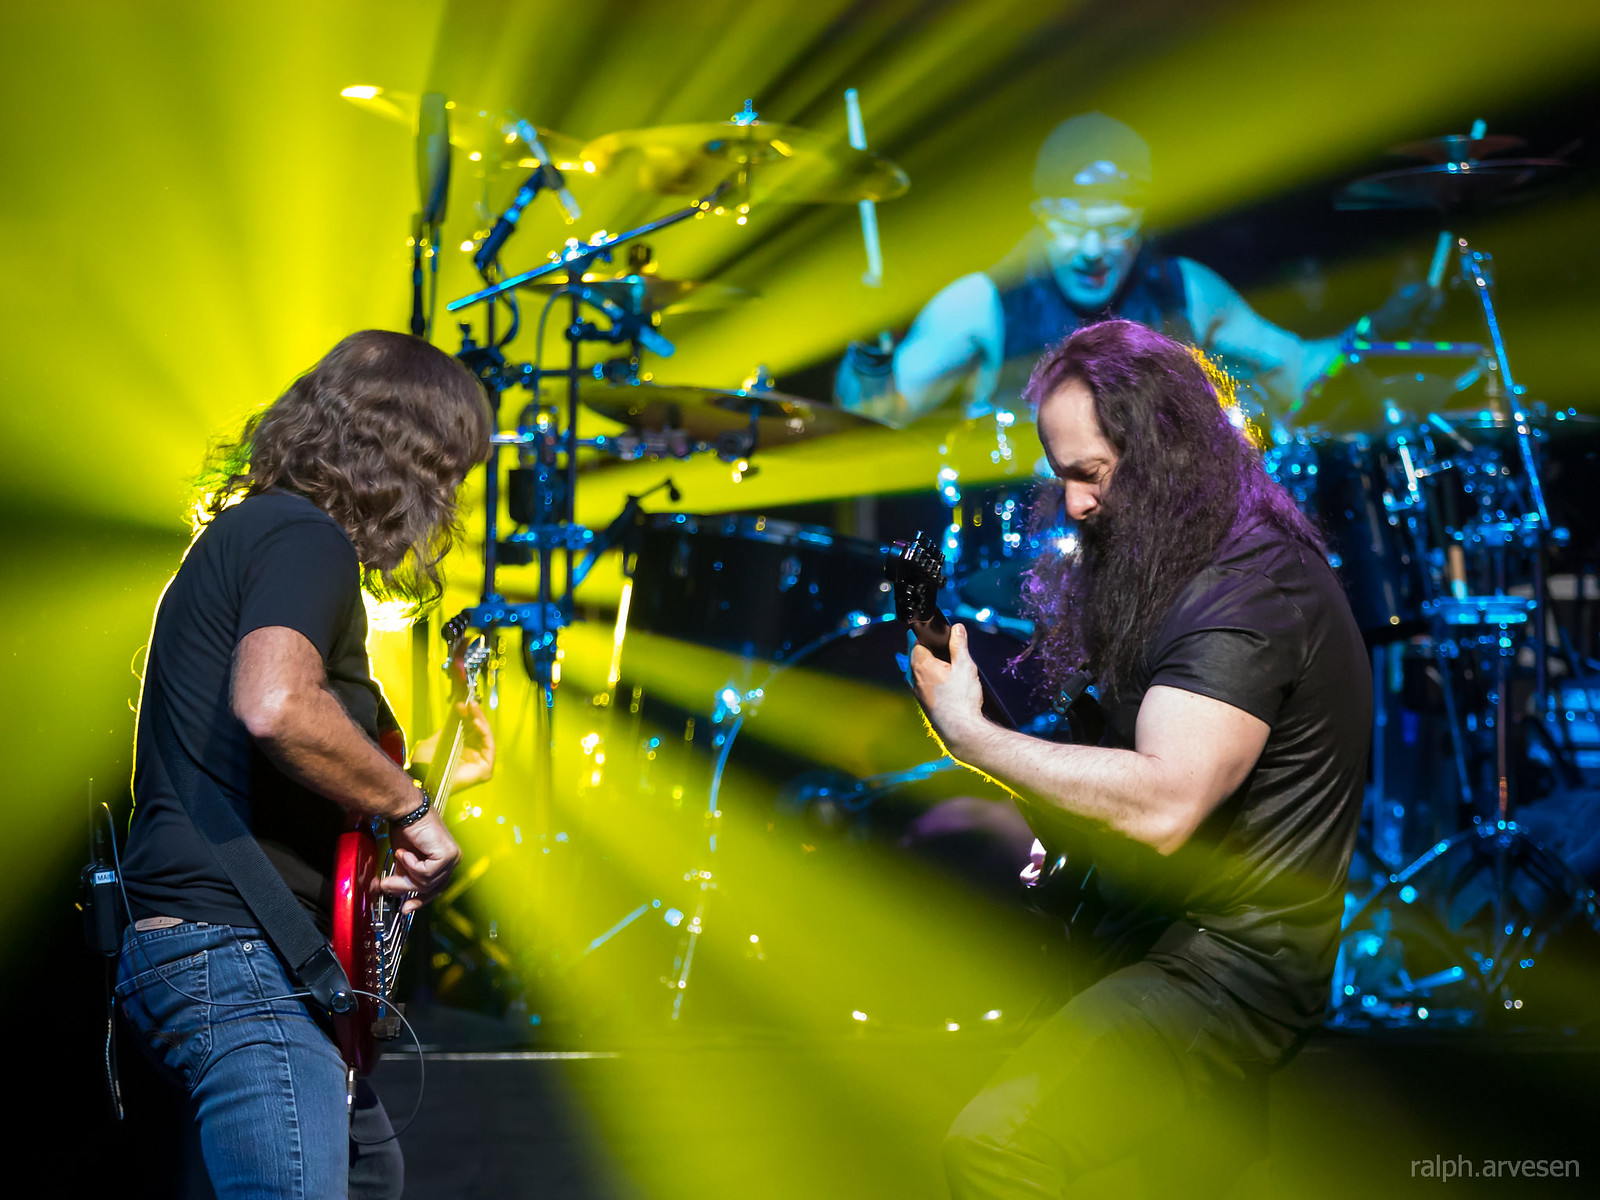 John Petrucci | Texas Review | Ralph Arvesen